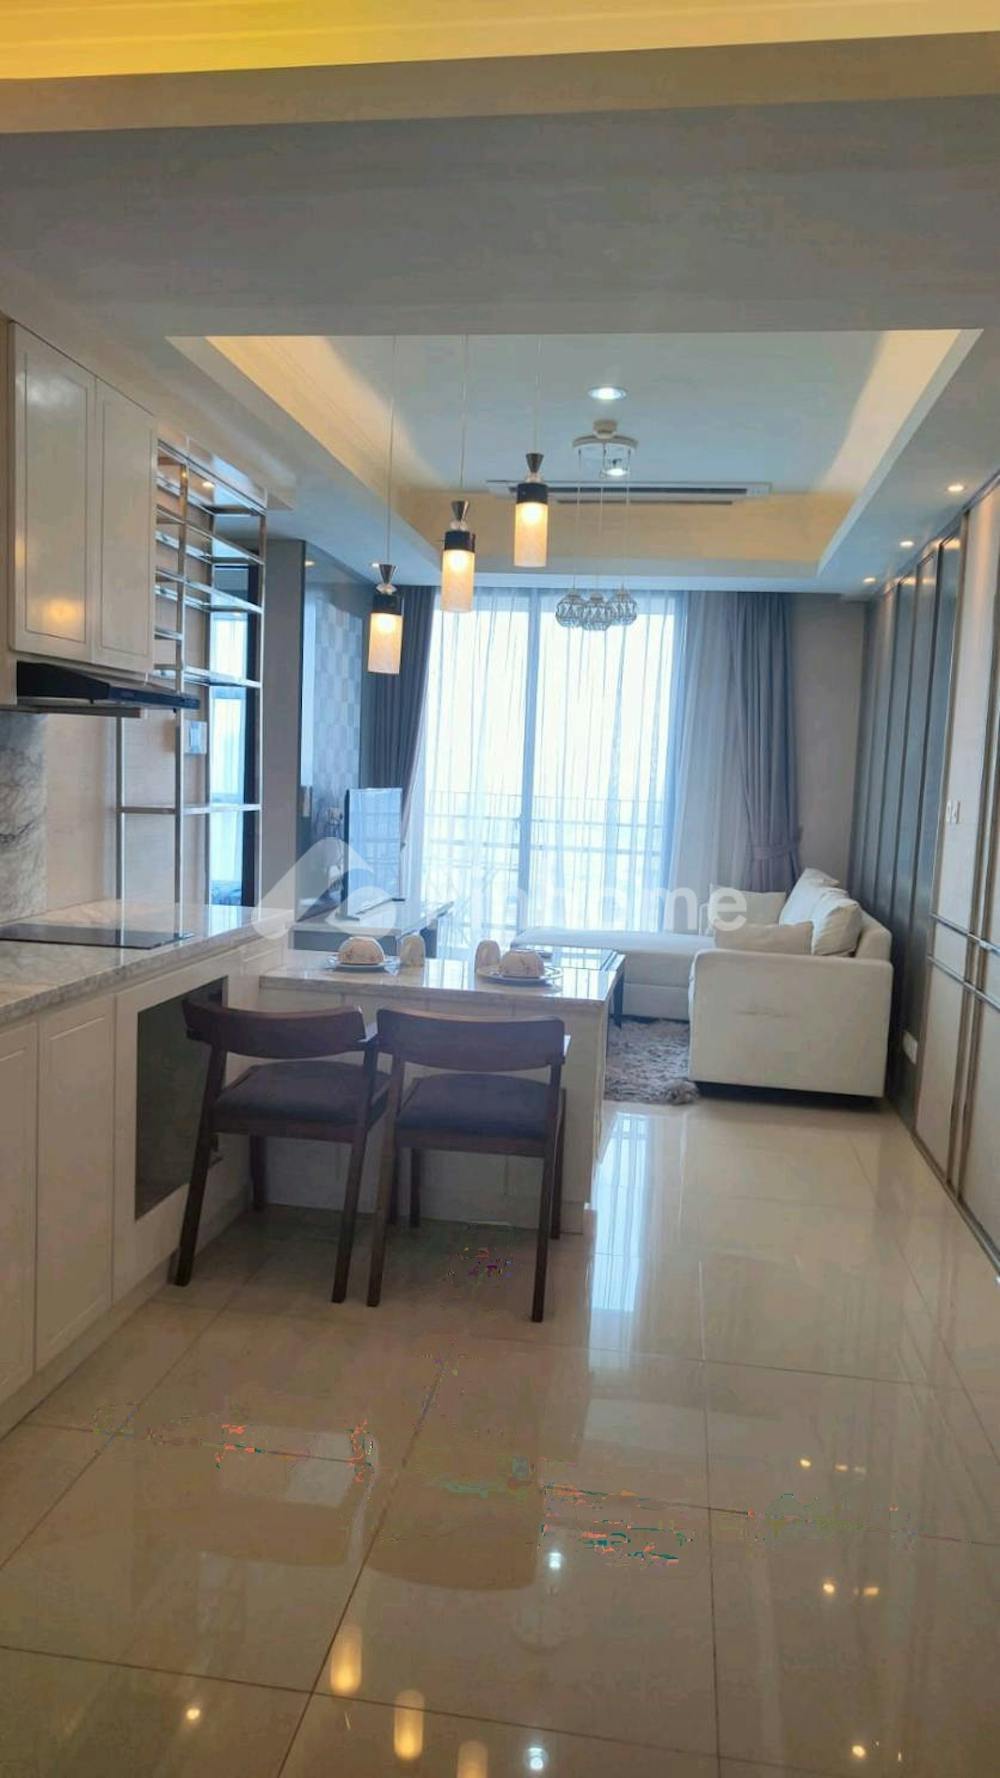 Disewakan Apartemen Fasilitas Terbaik di Casa Grande Residence Phase 2, Luas 88 m², 2 KT, Harga Rp15 Juta per Bulan | Pinhome